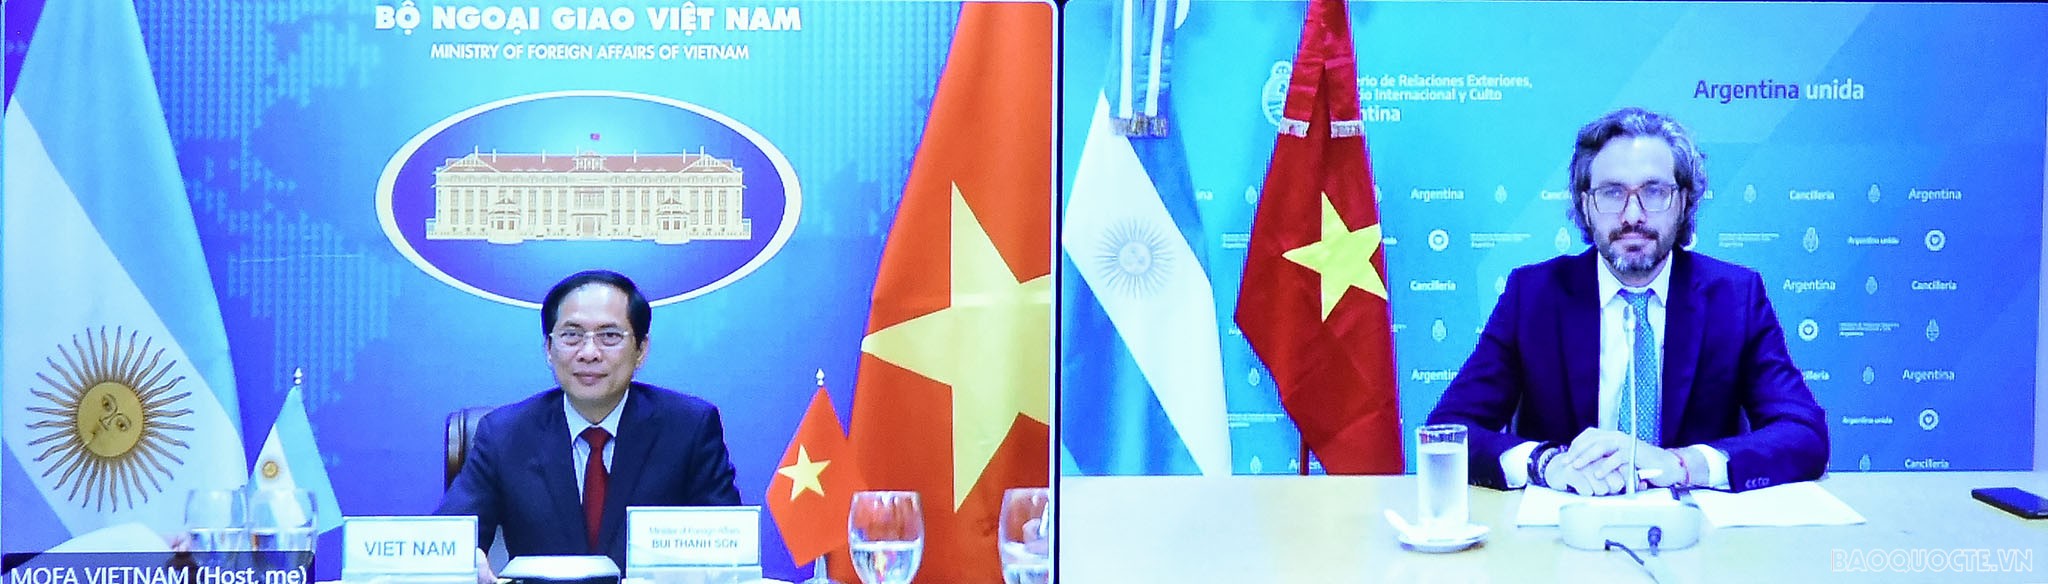 Đề nghị Argentina tạo điều kiện cho hàng hóa Việt Nam tiếp cận thị trường